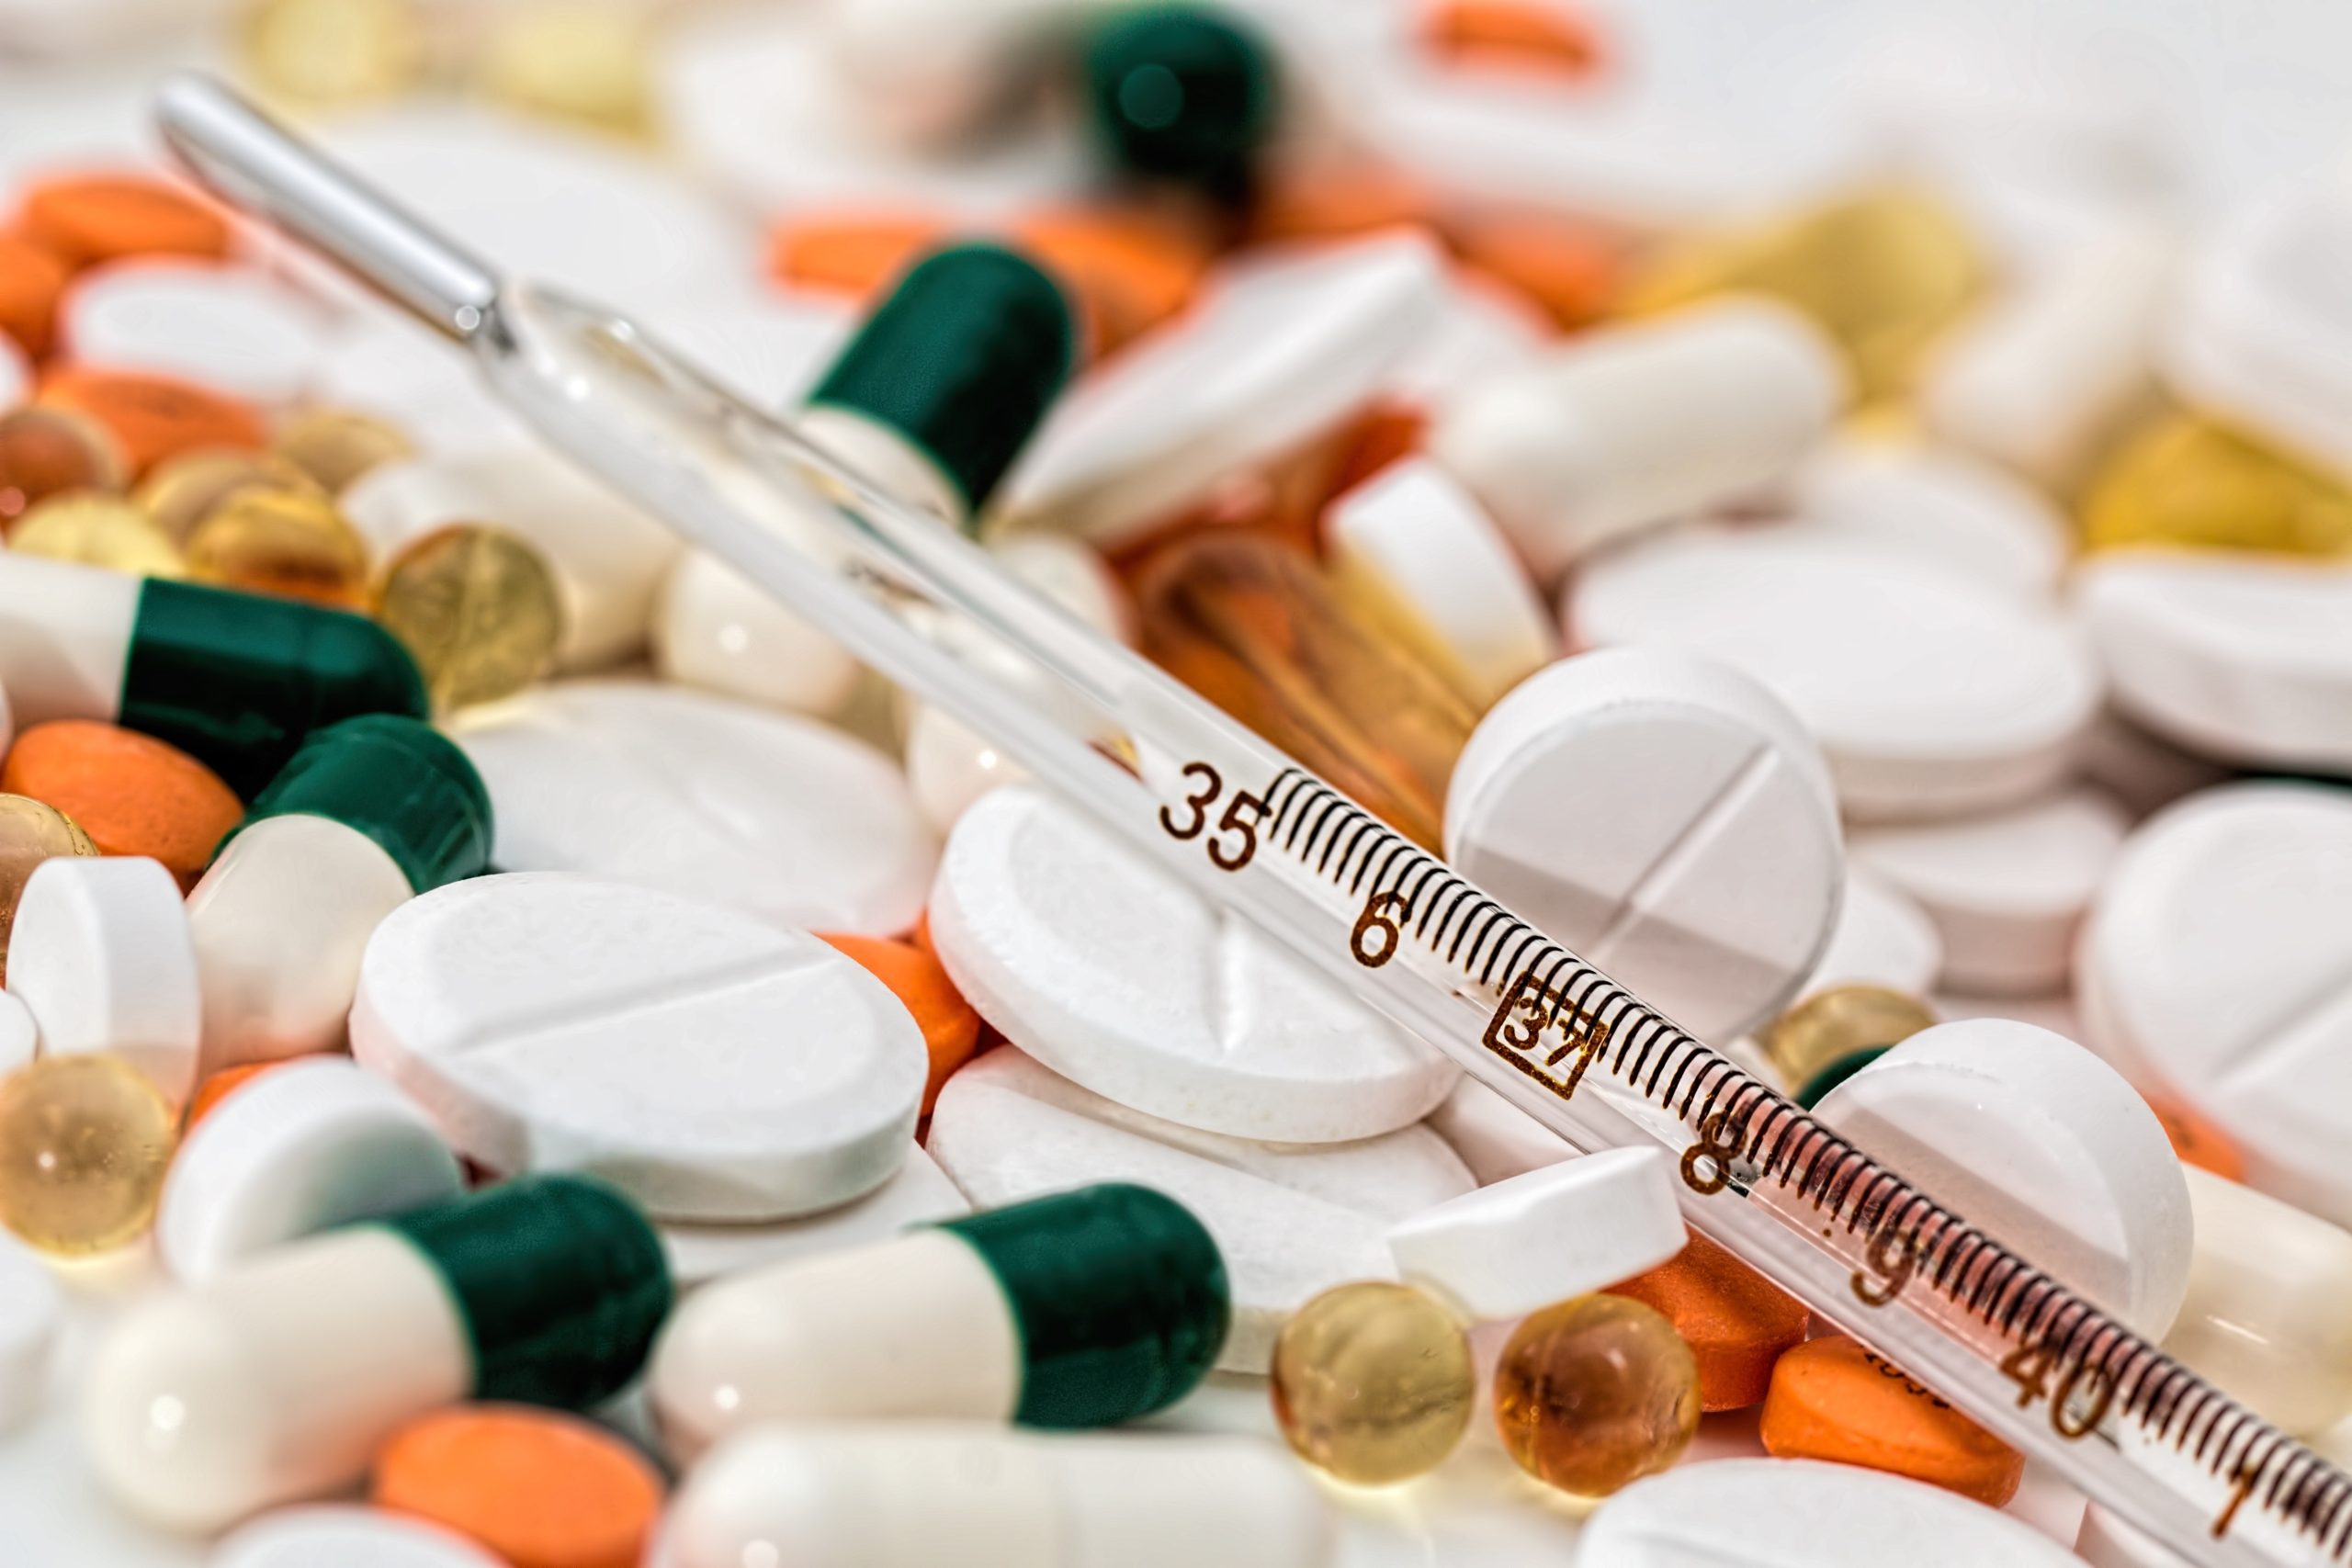 overdose journée internationale de prévention des overdoses opiacés opioïdes